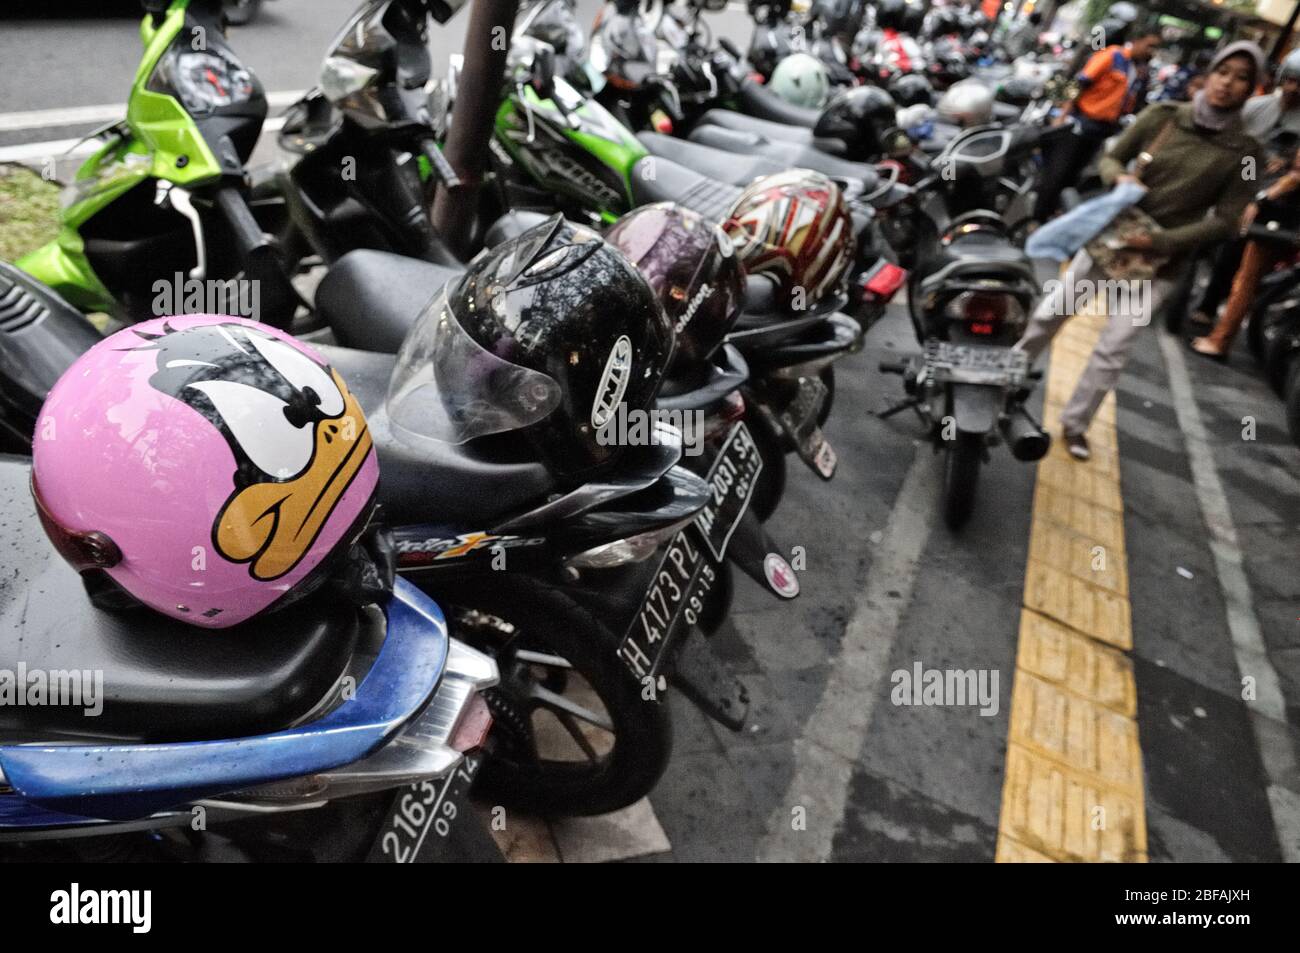 Daffy Duck helmet and motorcycles in Yogyakarta, Java, Indonesia Stock Photo